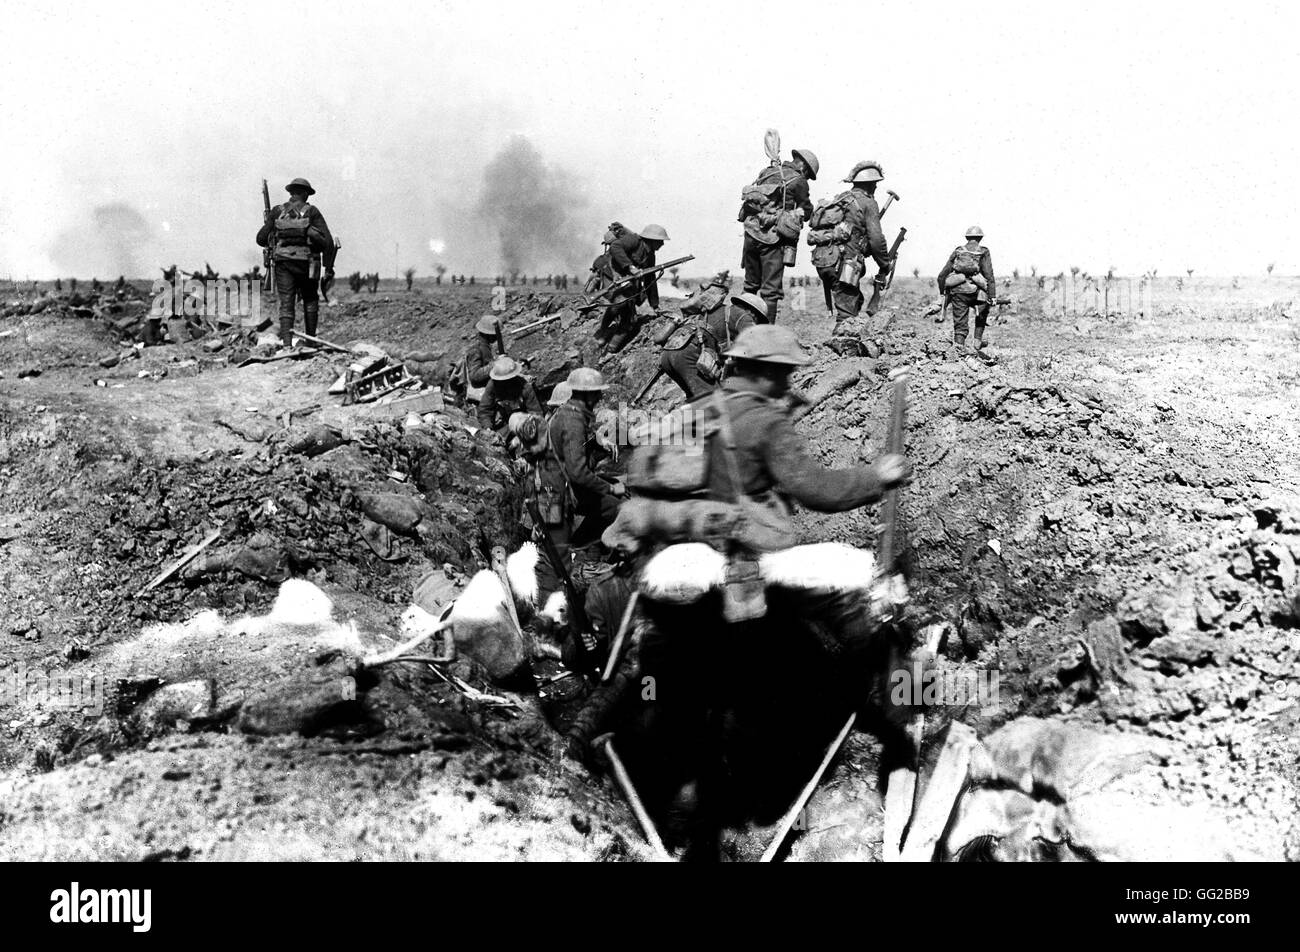 Les troupes britanniques pendant la bataille de Morval (Somme) Septembre 1916 France, la Première Guerre mondiale, l'Imperial War Museum de Londres Banque D'Images